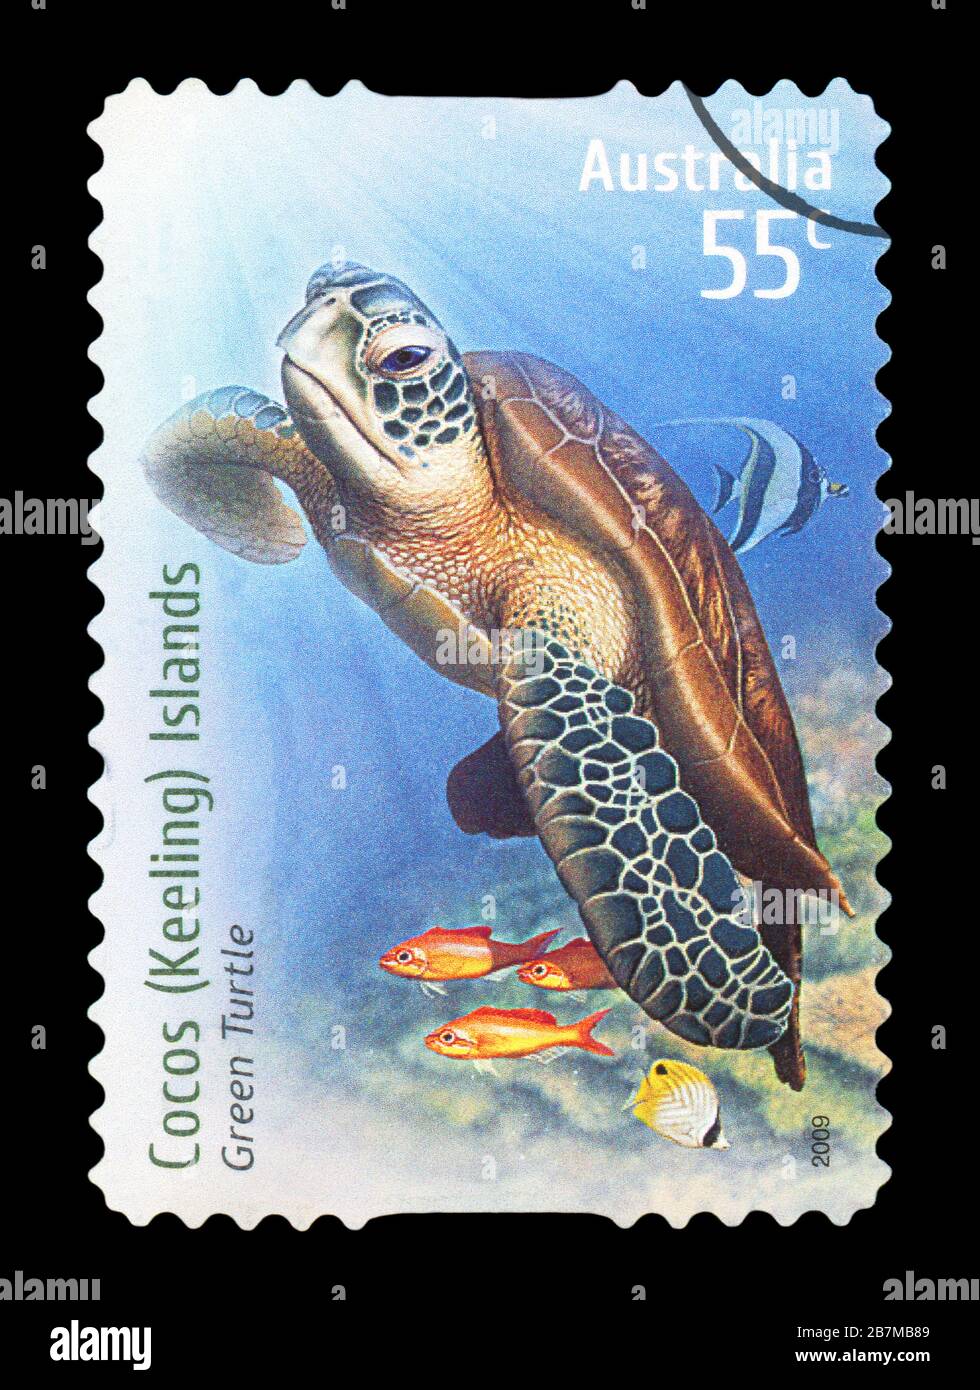 AUSTRALIE - VERS 2009 : un timbre-poste annulé de l'Australie illustrant la tortue verte, publié en 2009. Banque D'Images